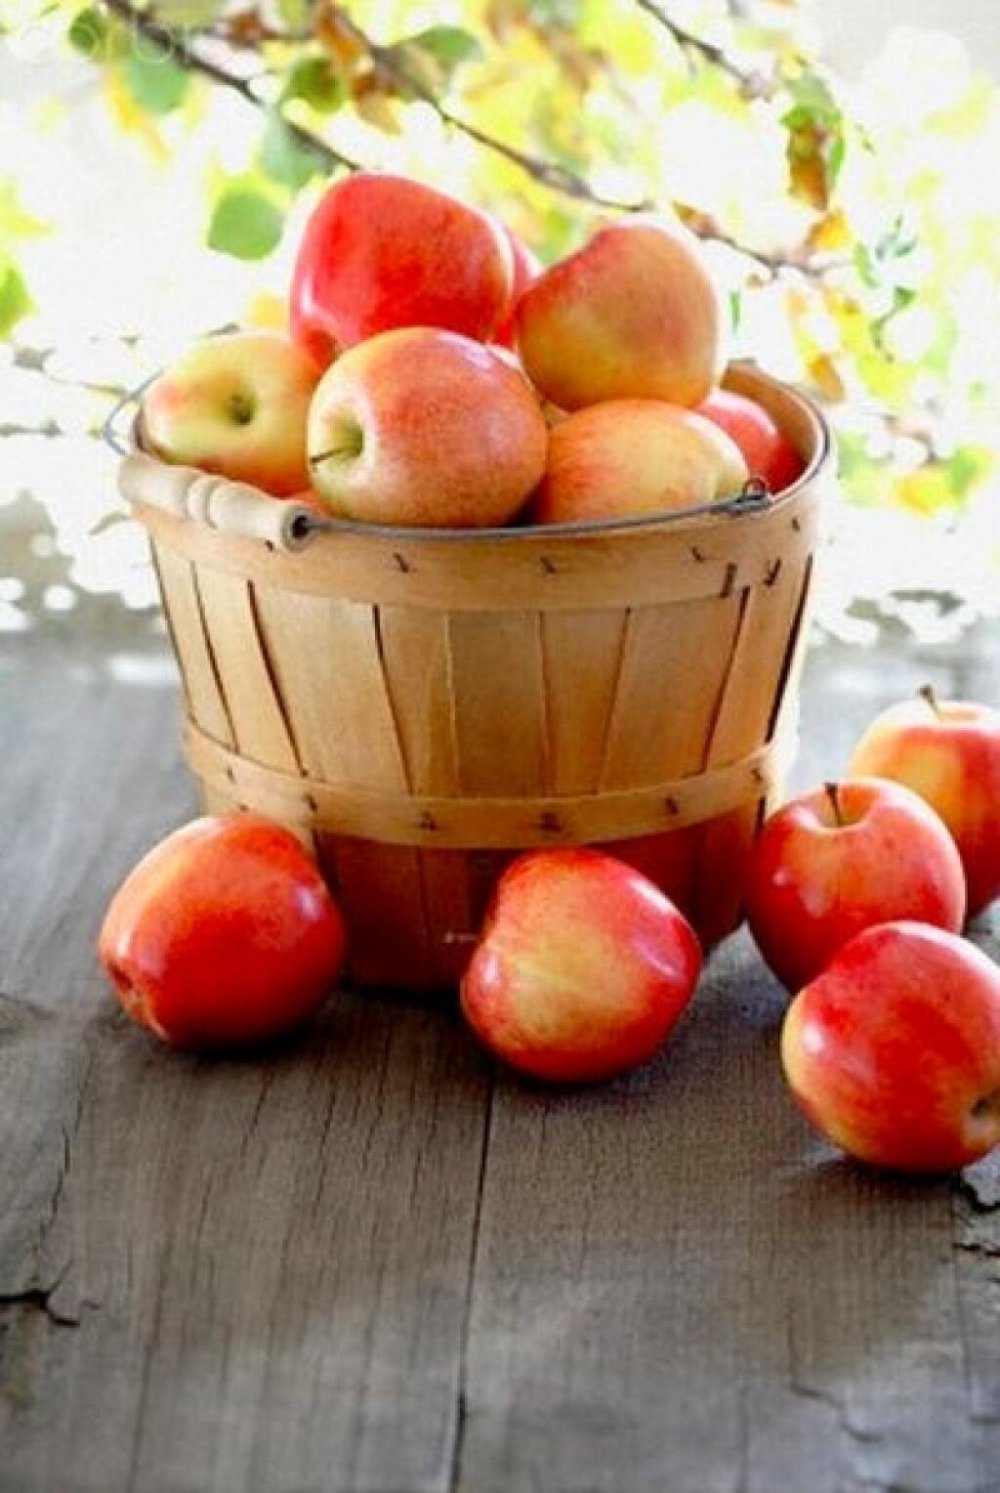 доброе утро картинки с яблоками